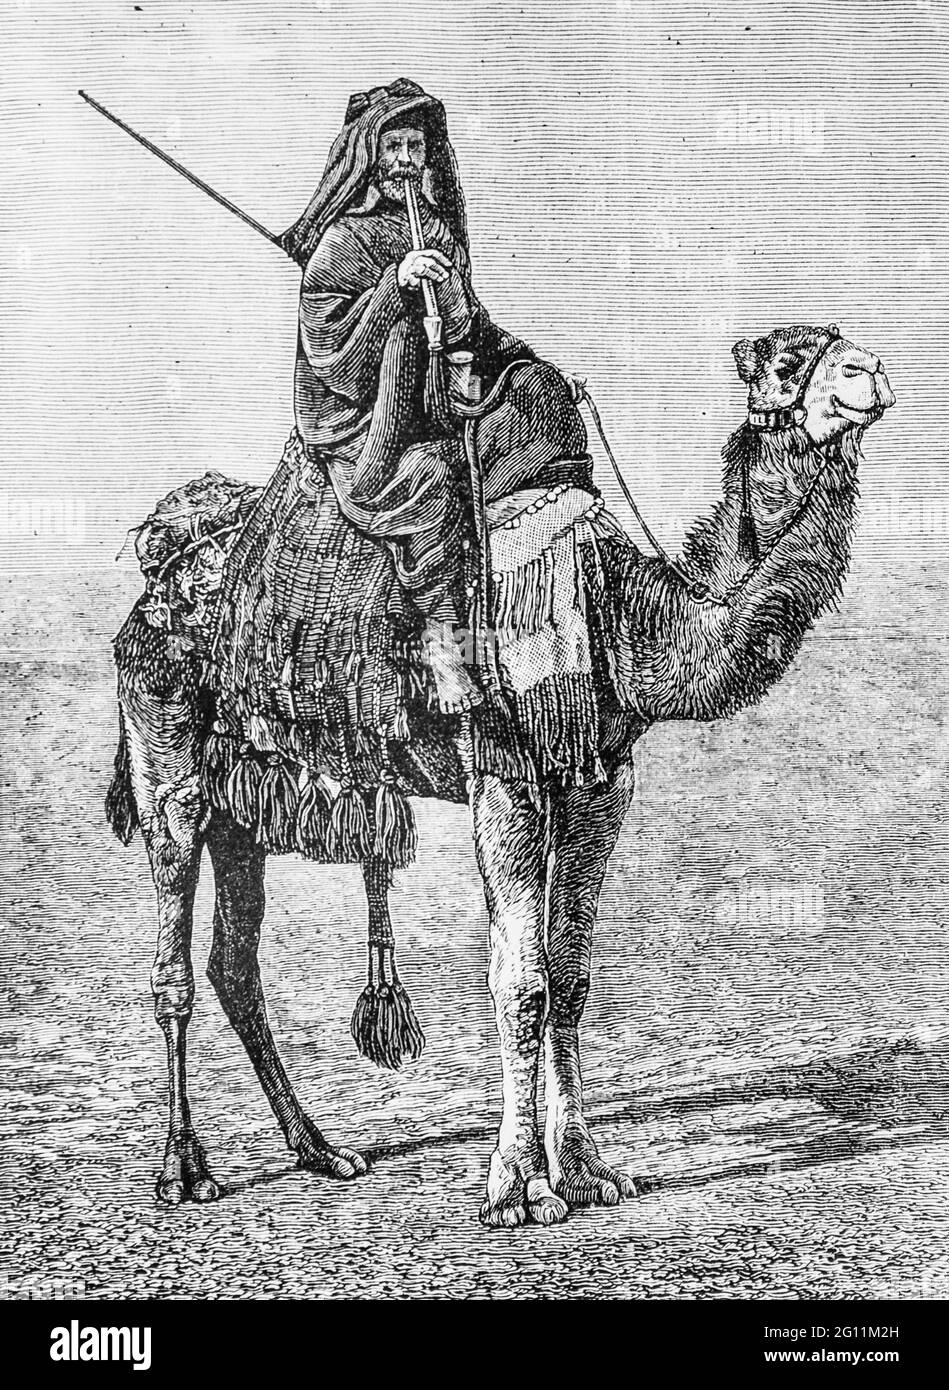 bedouin sur un chameau, l'univers illustre 1882, editeur librairie nouvelle Foto Stock